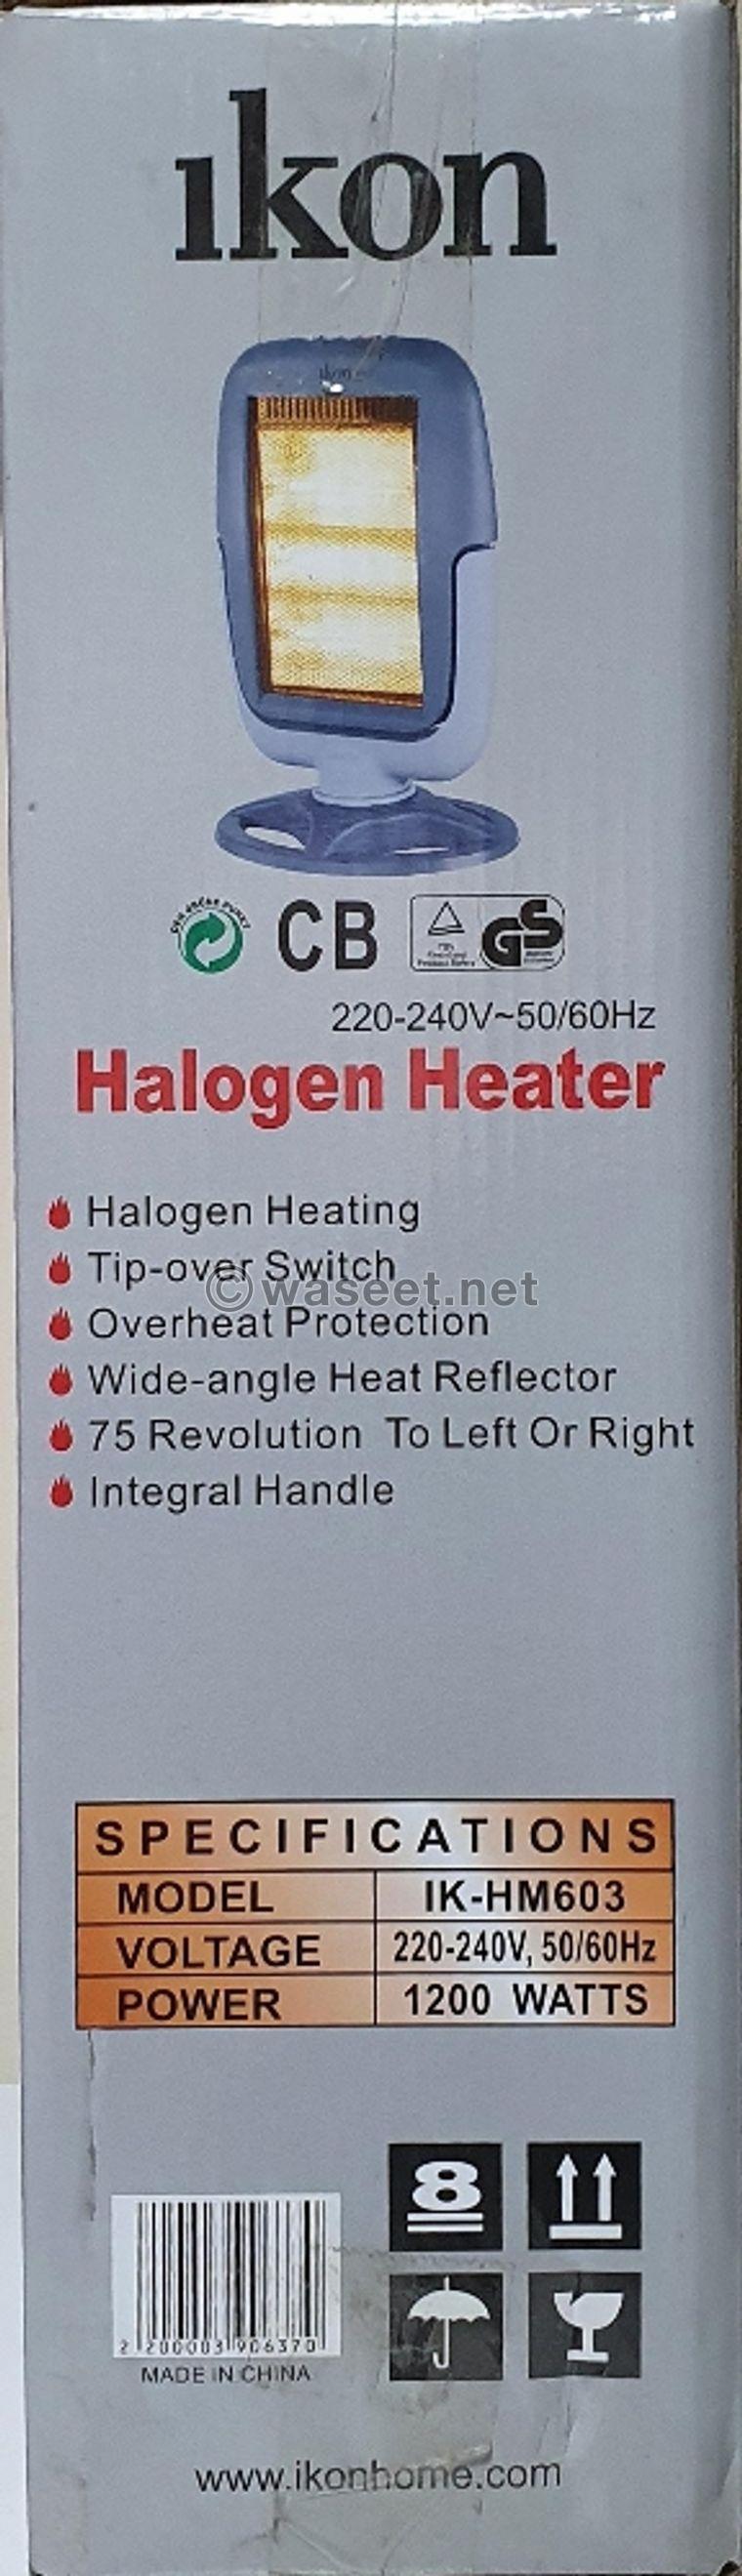 Icon heater heater 1